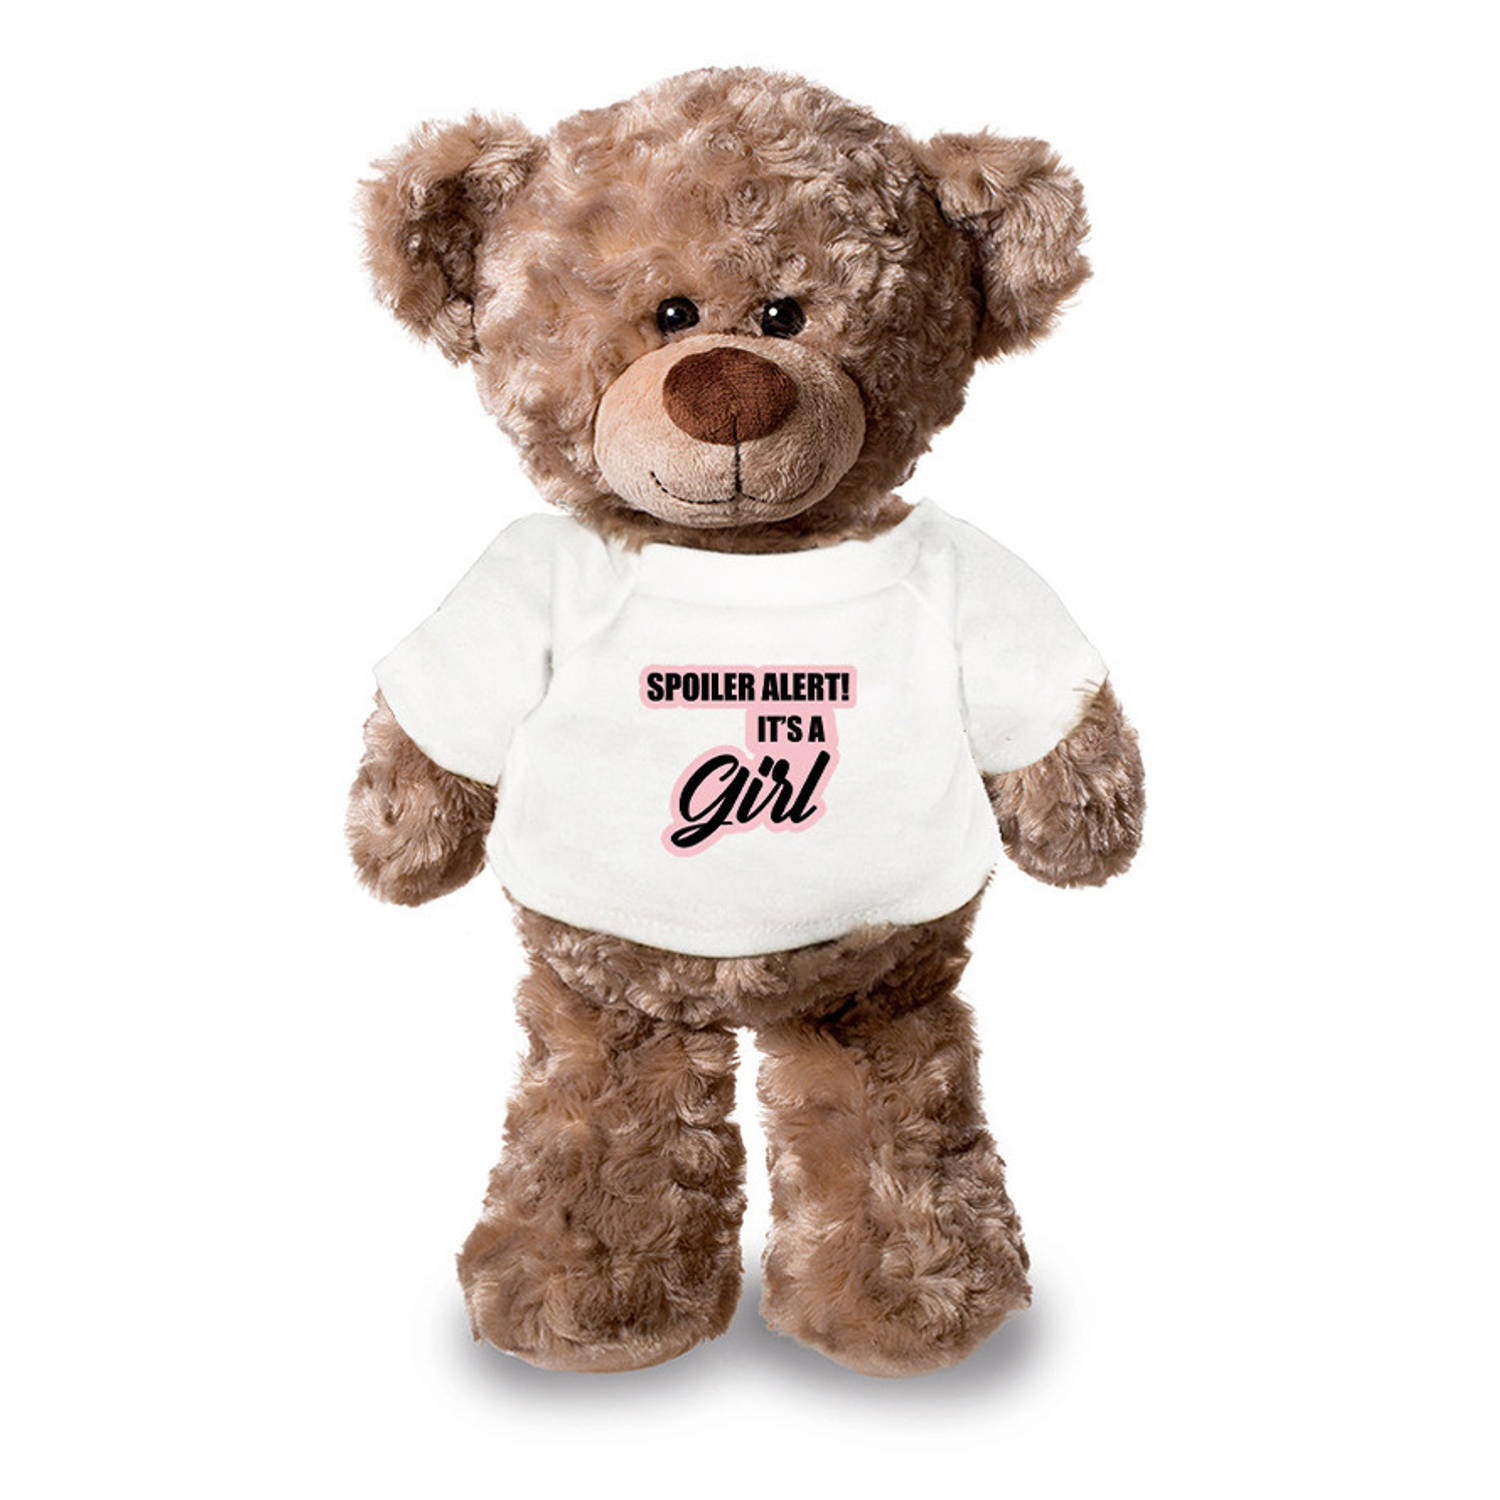 Spoiler alert girl aankondiging meisje pluche teddybeer knuffel 24 cm Knuffelberen